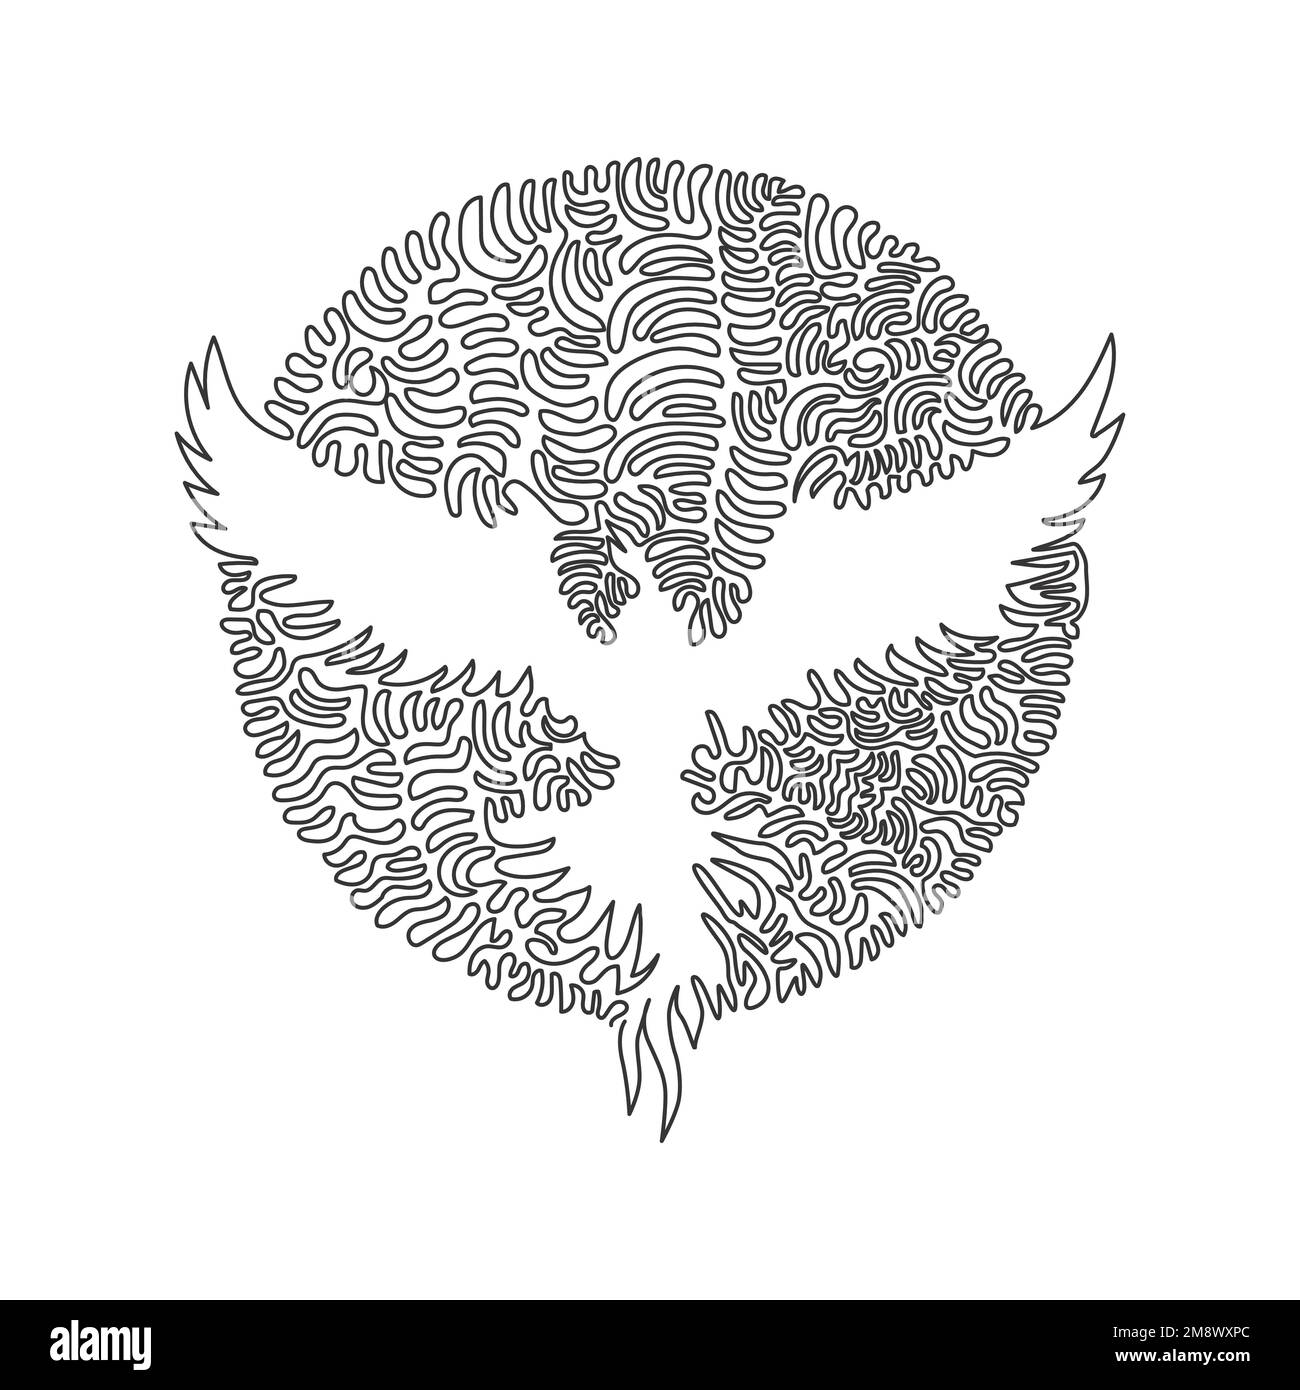 Eine lockige Zeichnung mit einer Linie der süßen fliegenden abstrakten kunst von phoenix. Durchgehende Linienzeichnung grafischer Entwurfsvektordarstellung eines Vogel der Unsterblichkeit Stock Vektor